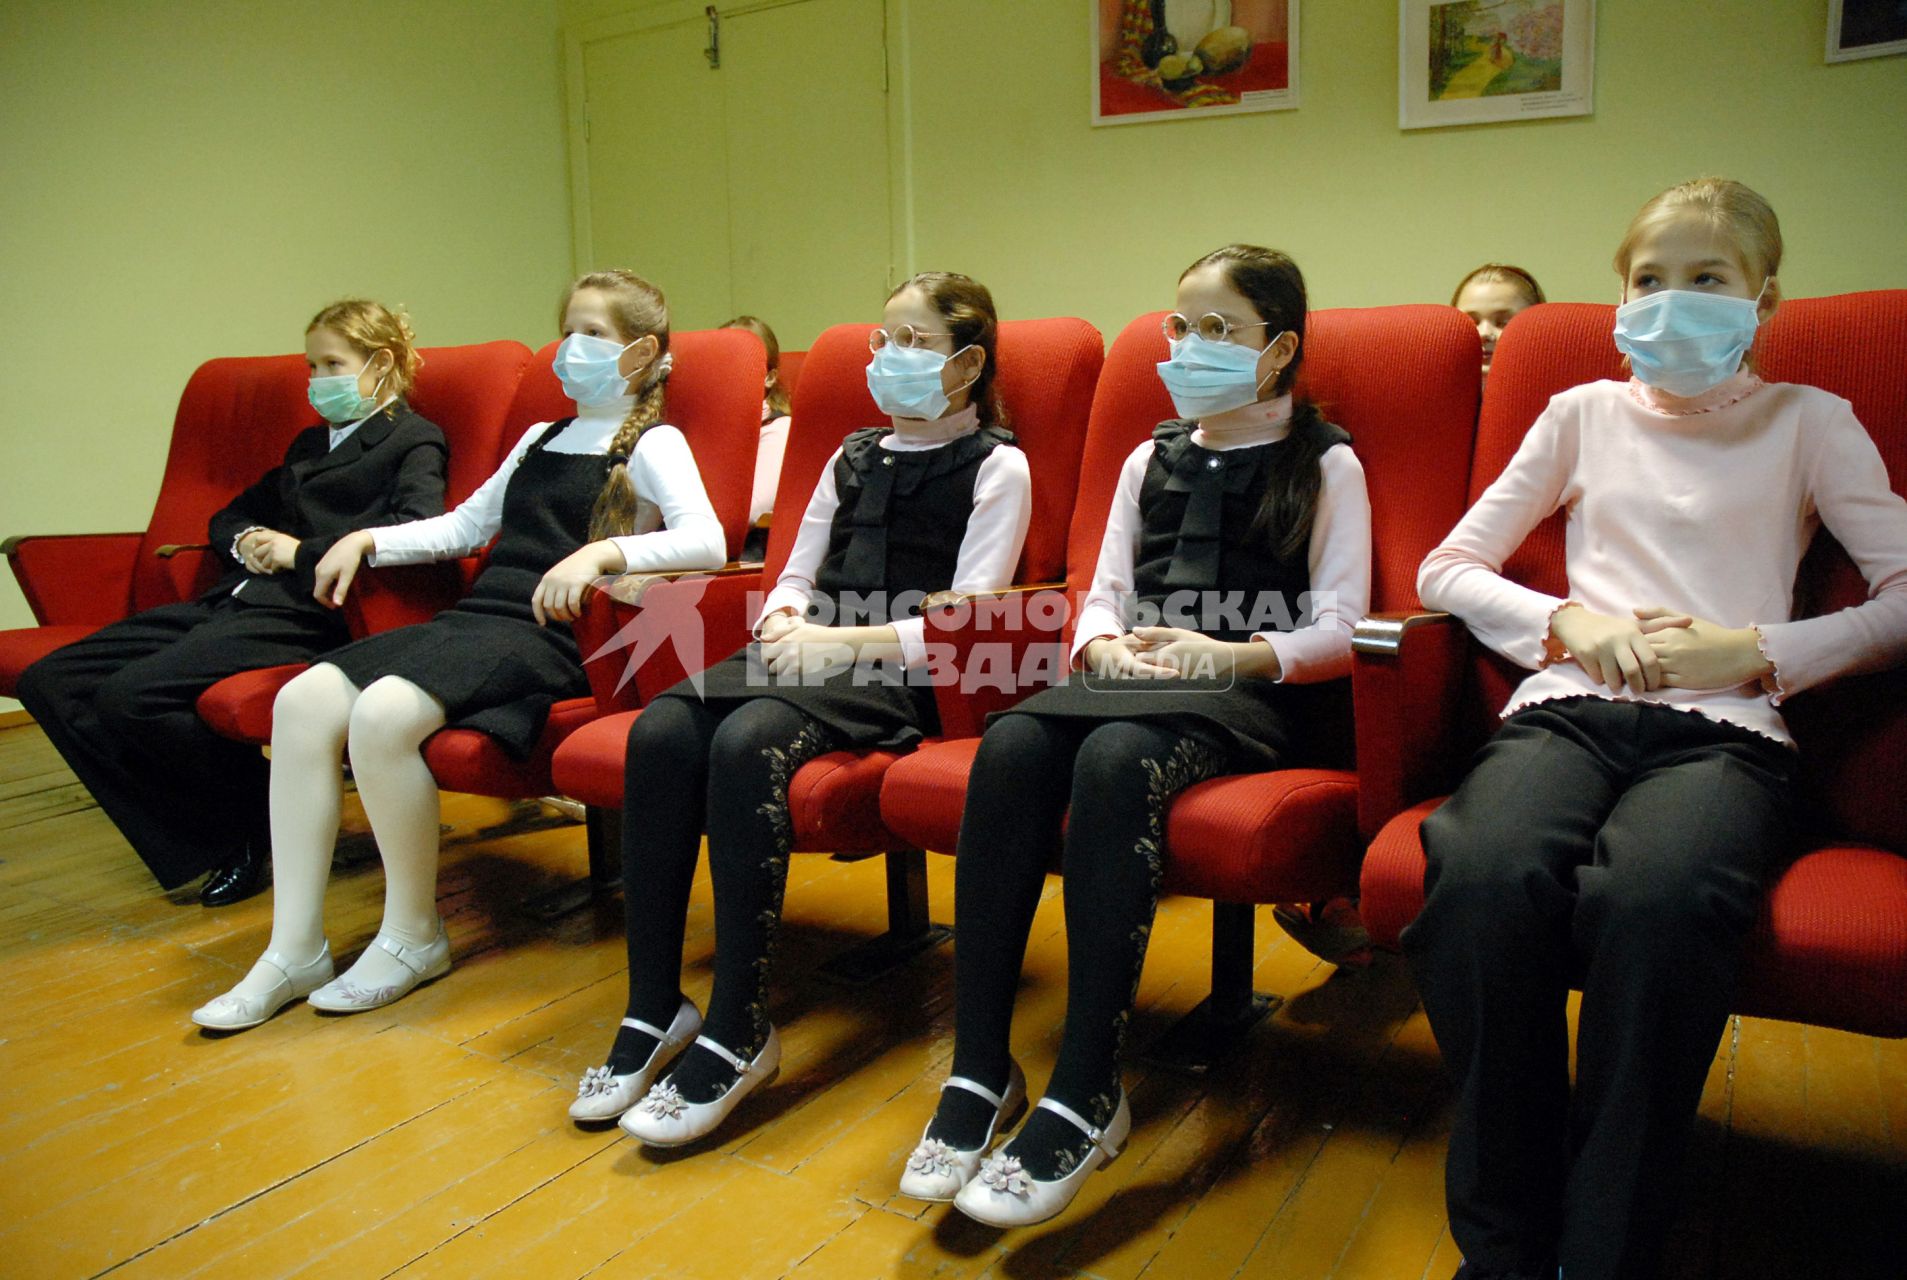 Школьники в медицинских повязках сидят в креслах в кабинете просмотра учебных фильмов.